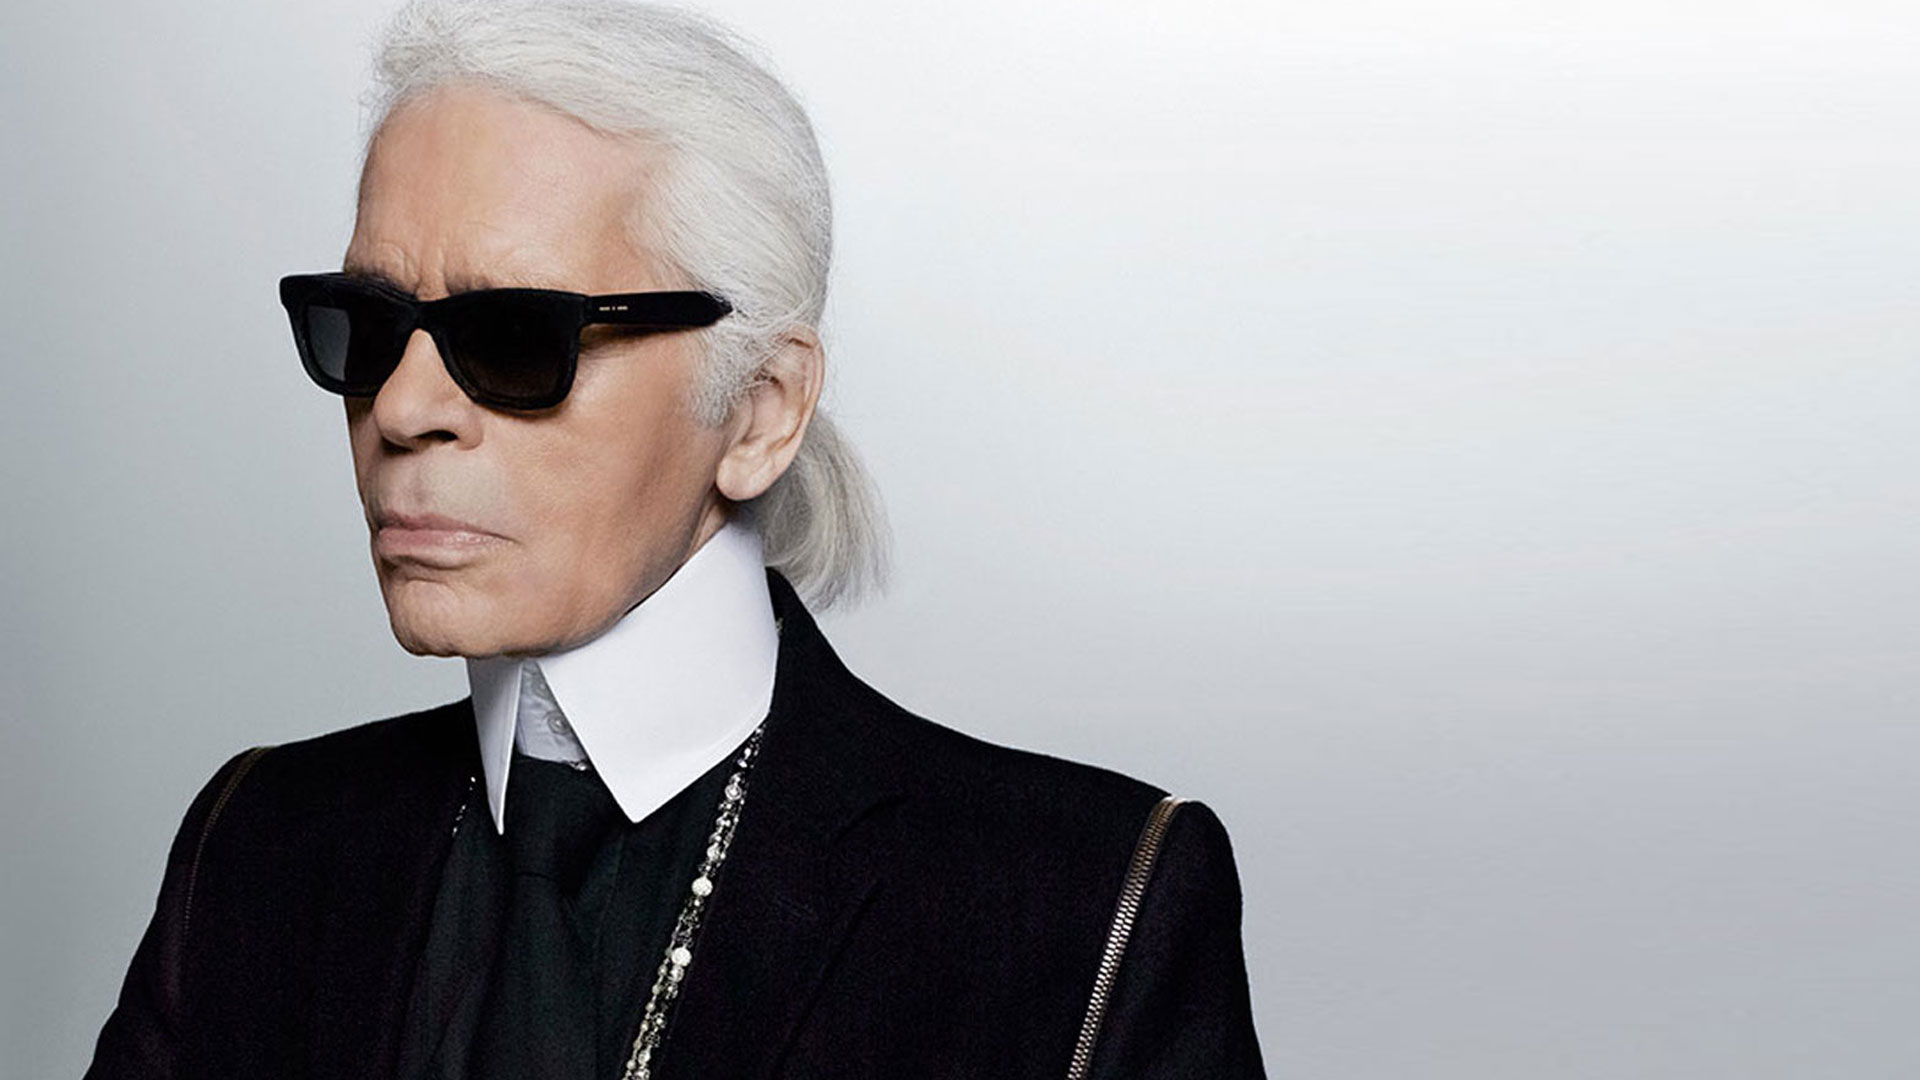 Trong gần 40 năm tại Chanel, Karl đã giúp vực dậy nhà mốt danh tiếng này. Ông biến một thương hiệu rệu rã trở nên đắt giá. Mọi BST của Chanel đều nhanh chóng cháy hàng.